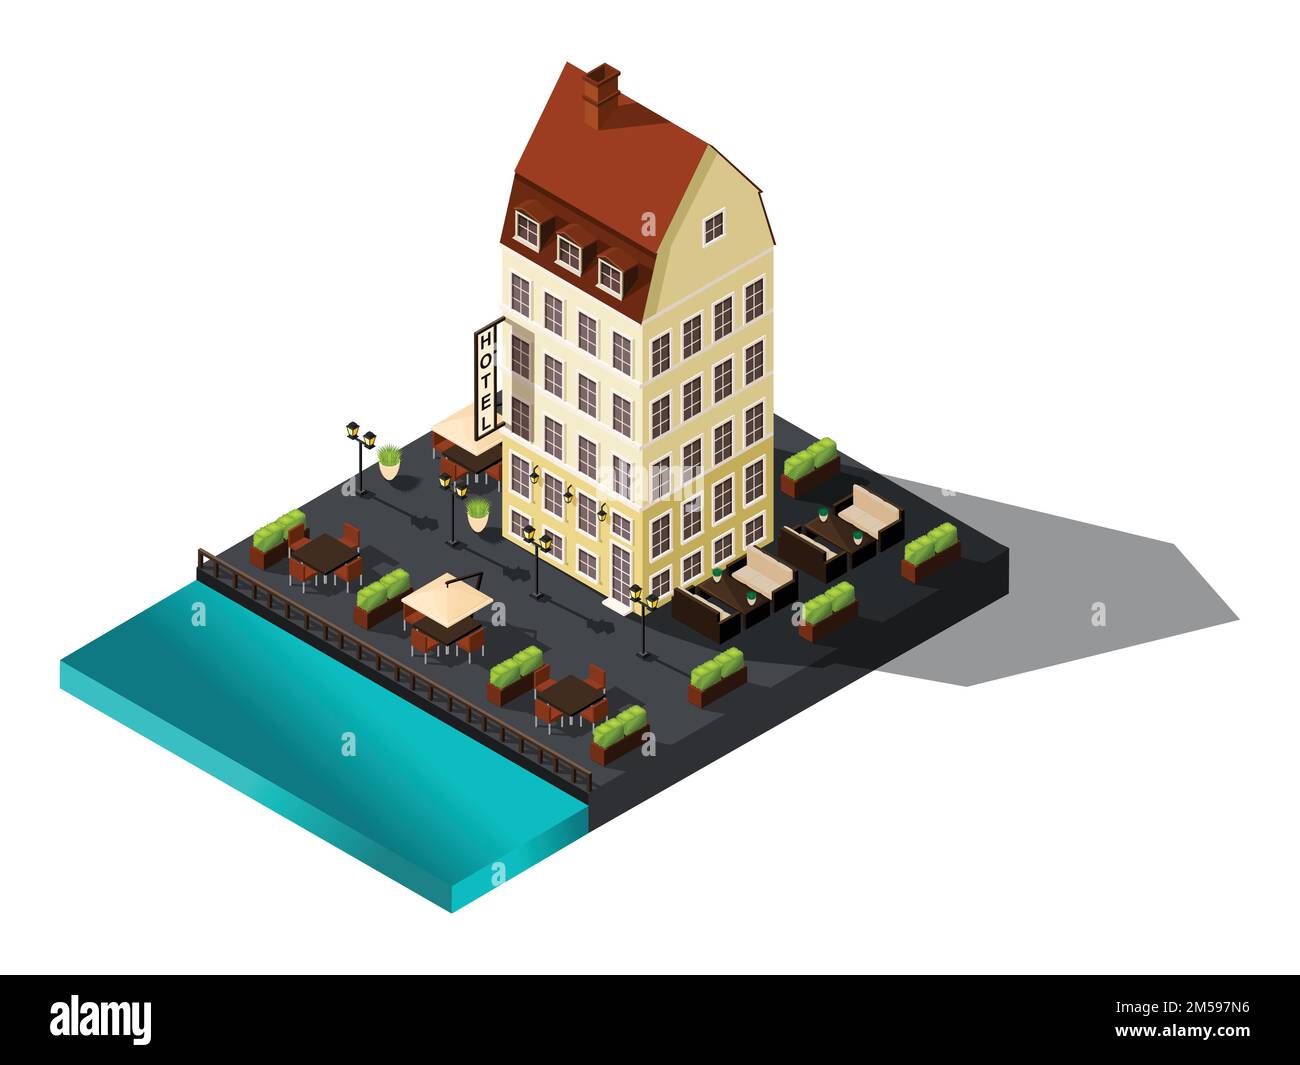 Icona isometrica, 3D antica casa sul mare, hotel, Danimarca, Copenaghen, Parigi, centro storico, antico edificio per illustrazioni vettoriali. Illustrazione Vettoriale